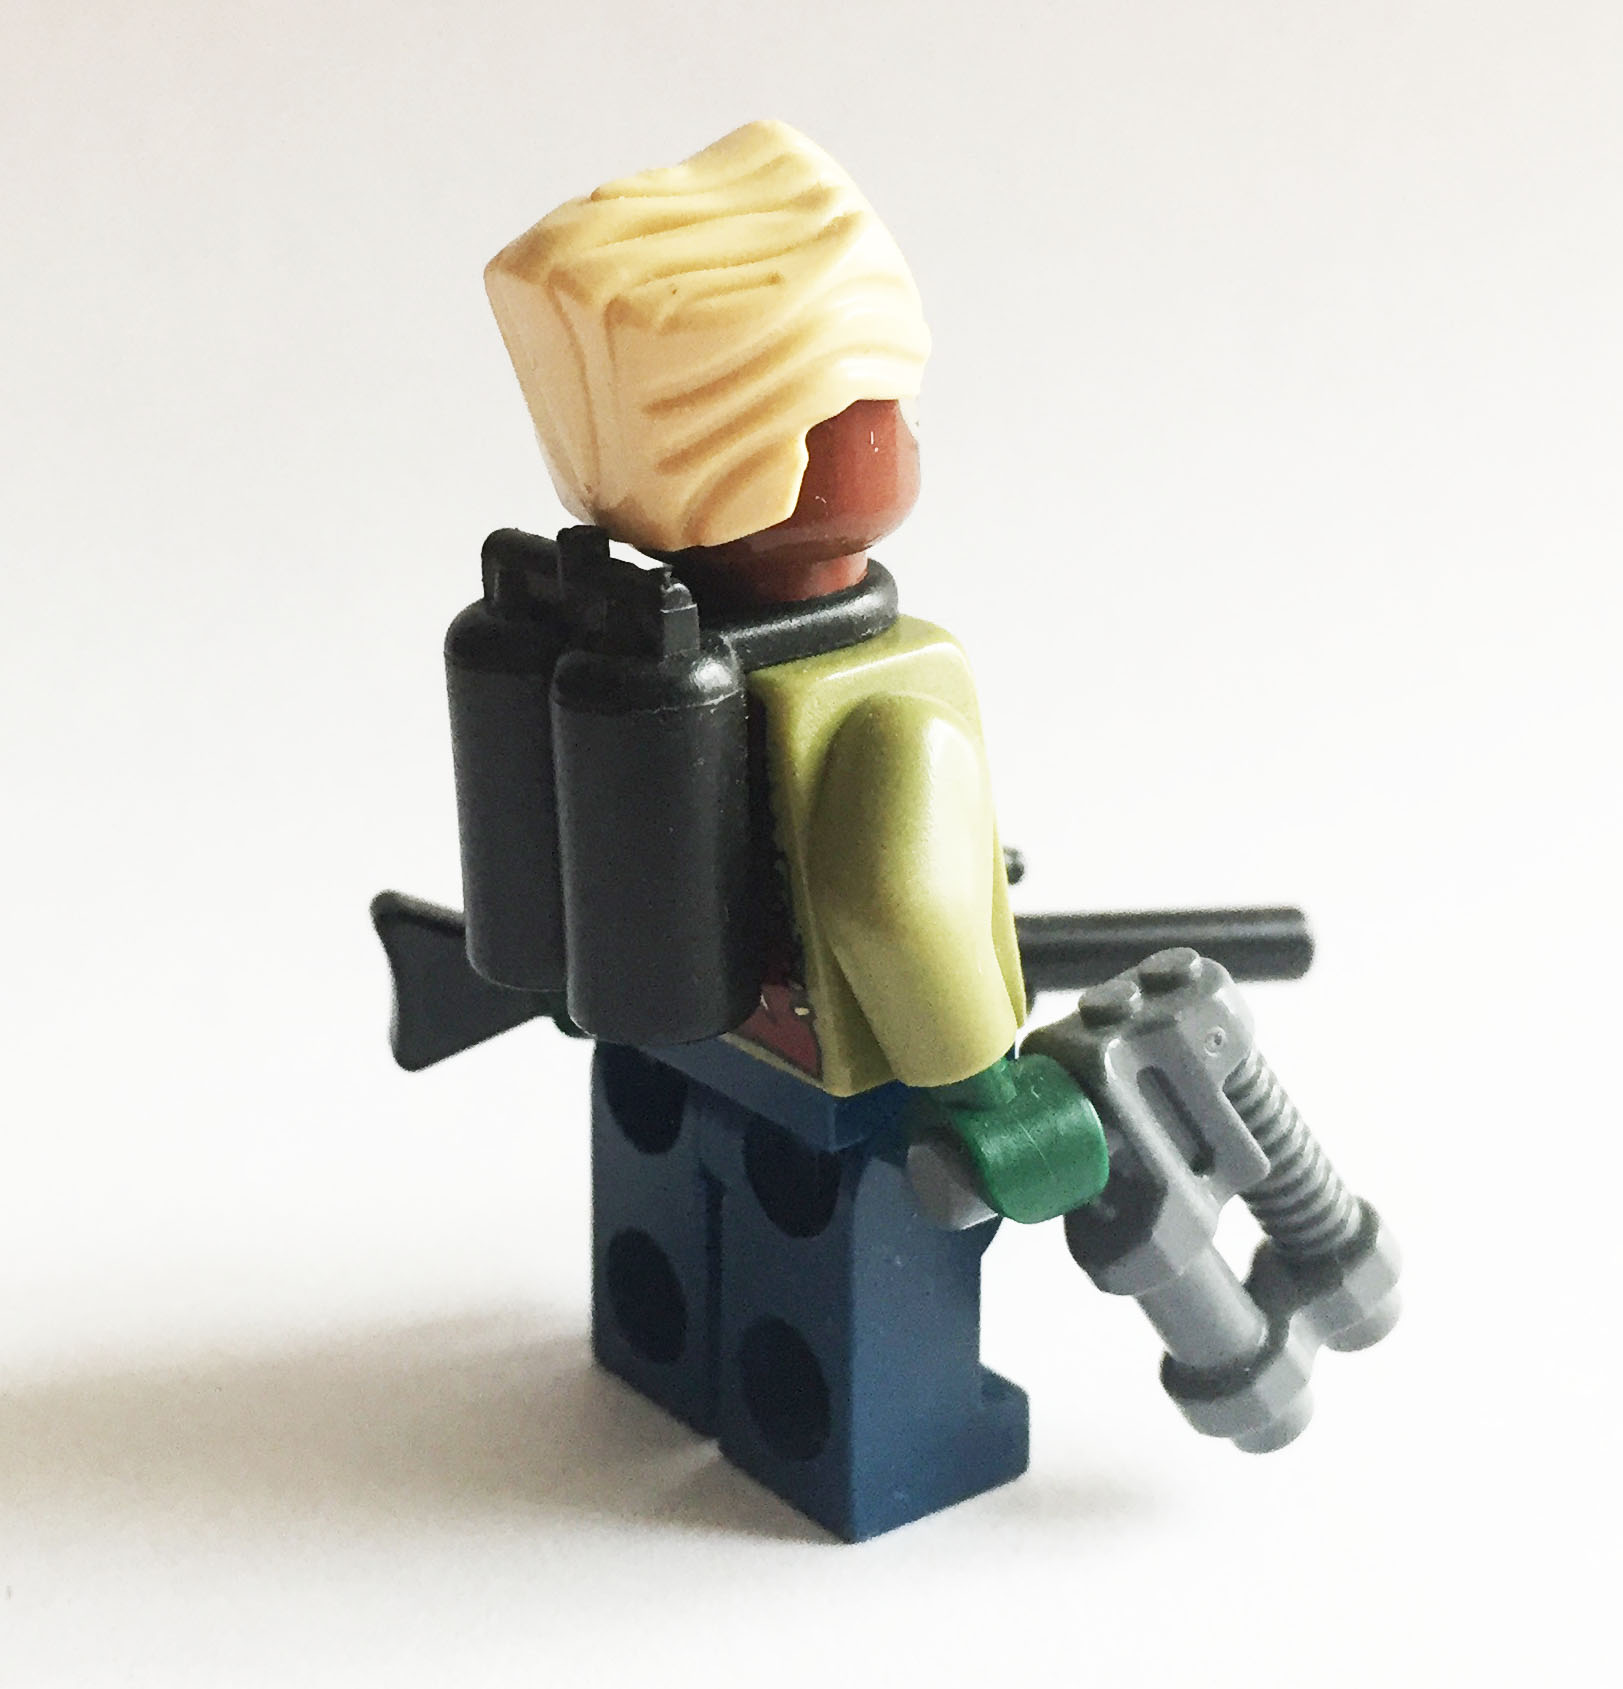 LEGO Minifigur Gurrad (Perry Rhodan)